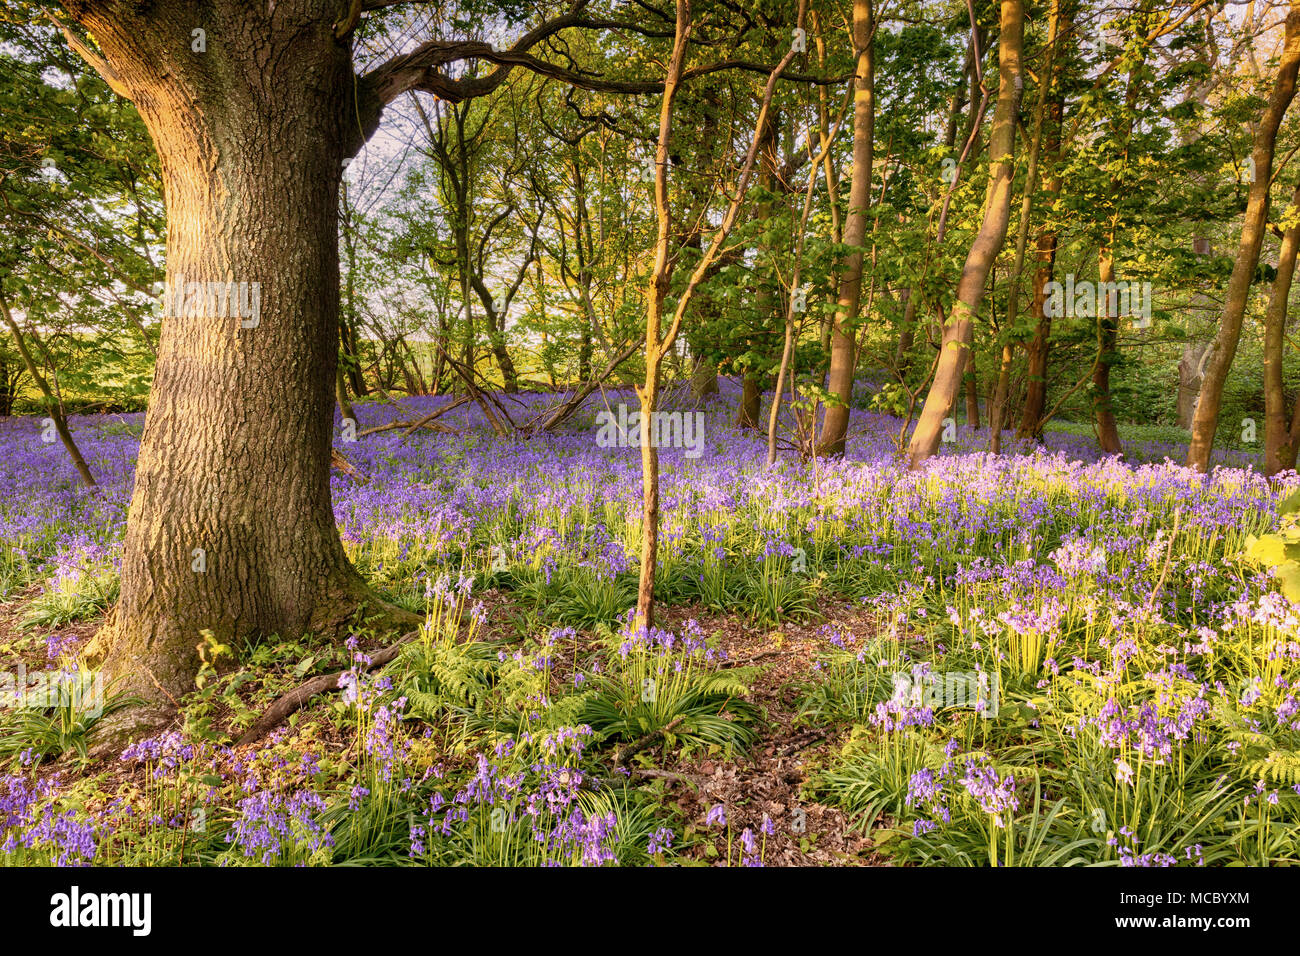 Bluebell percorso immerso in un bosco di nascosto in NORFOLK REGNO UNITO. Molla selvatici fioriture dei fiori a sunrise in una foresta. Foto Stock